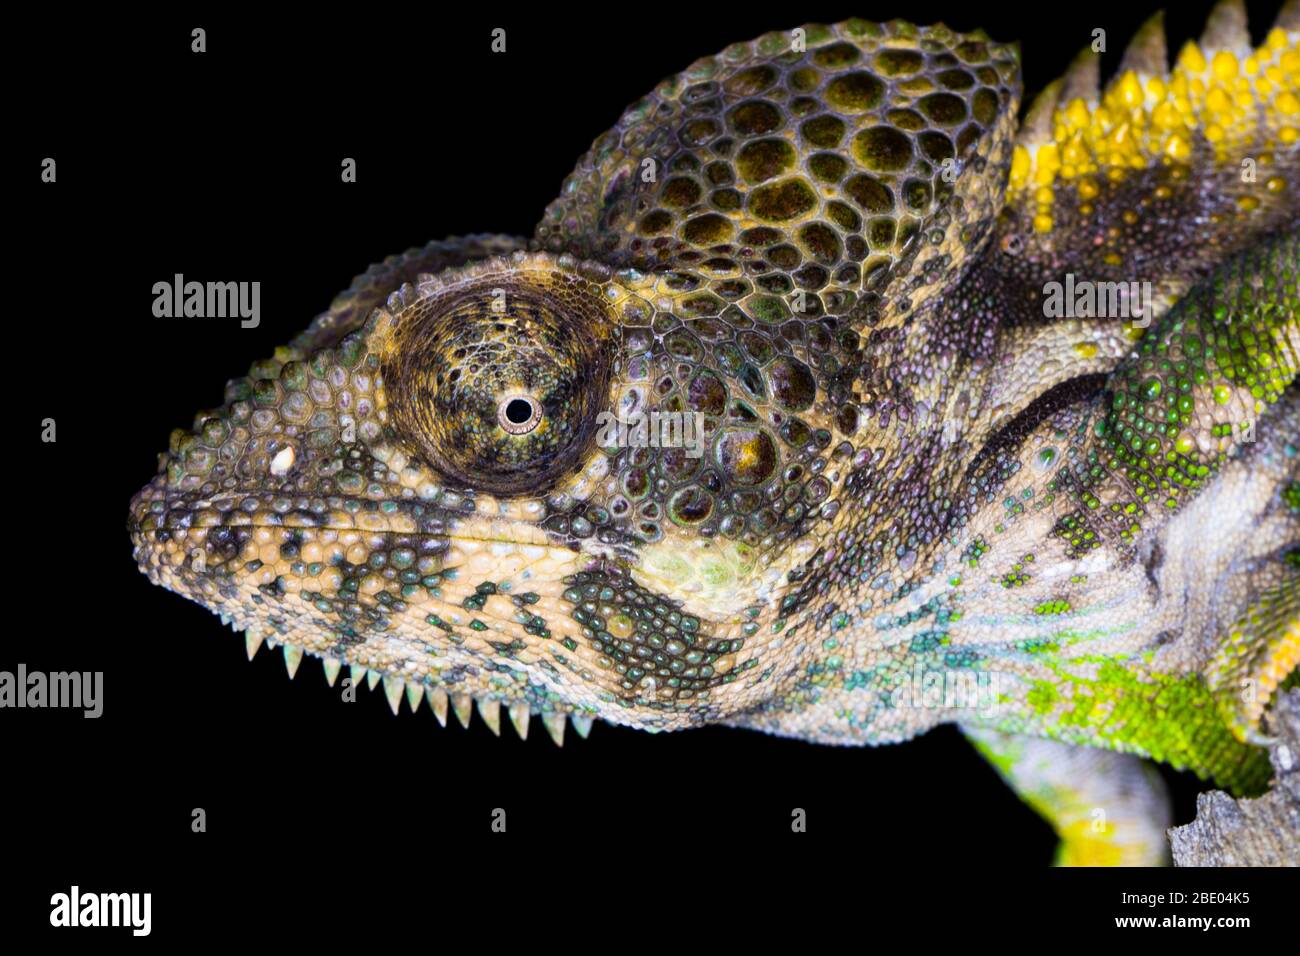 Spiny chameleon (Furcifer verrucosus) extreme close up, Madagascar Stock Photo